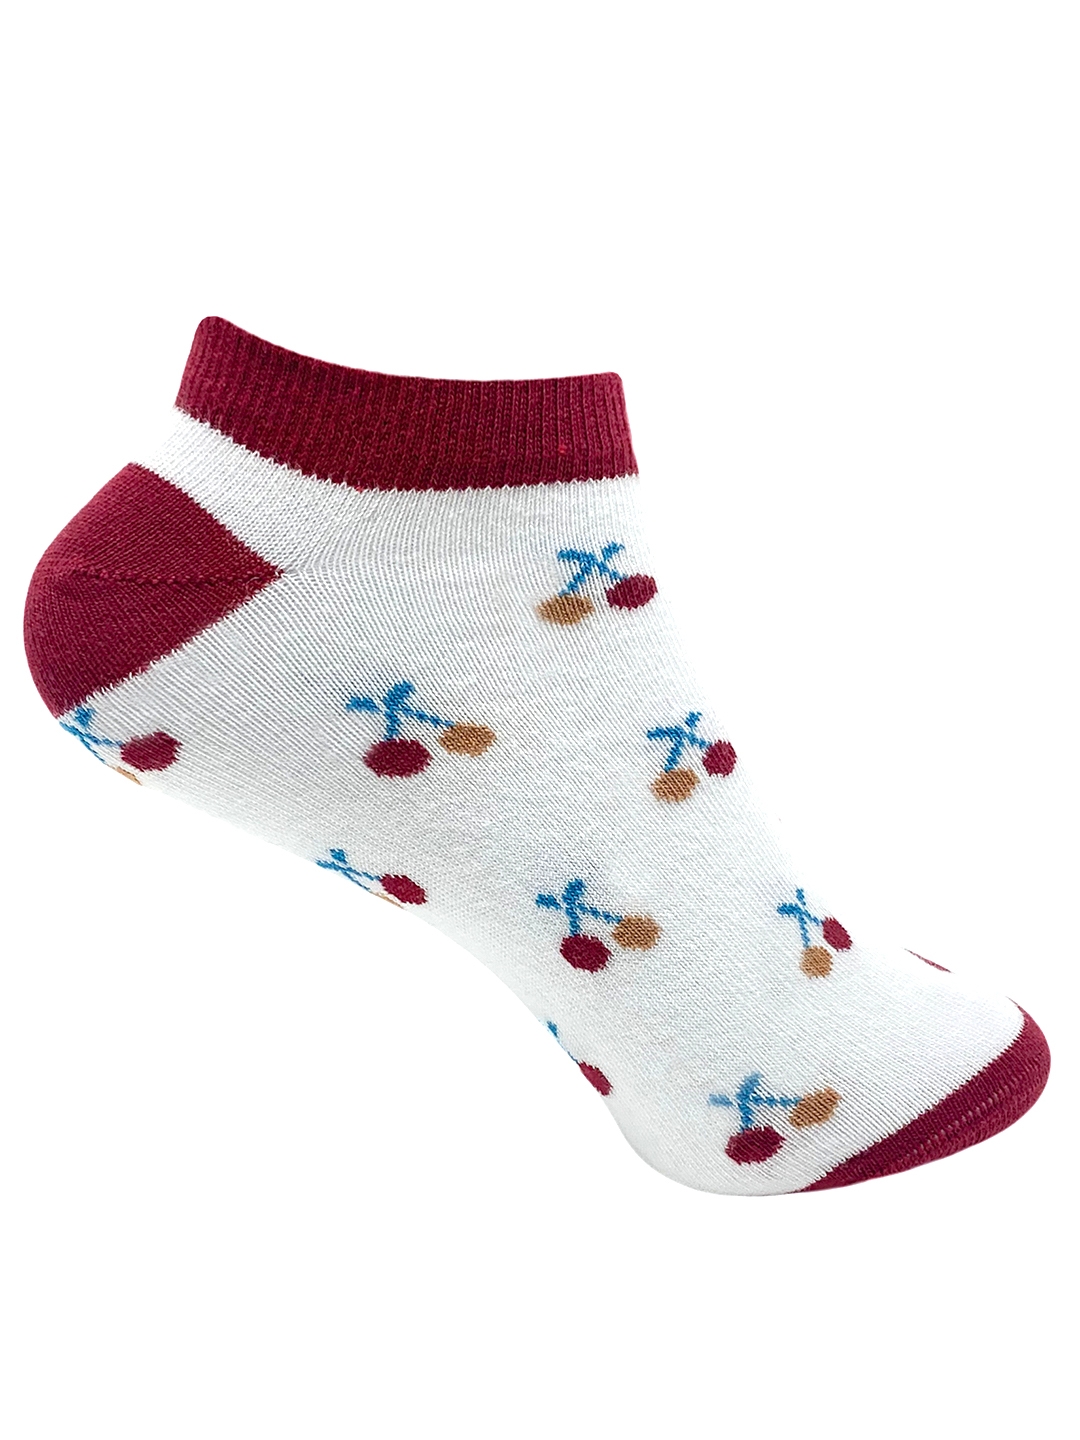 Mint & Oak | Mint & Oak Feelin’ Cherry-fic White Ankle Length Socks for Women